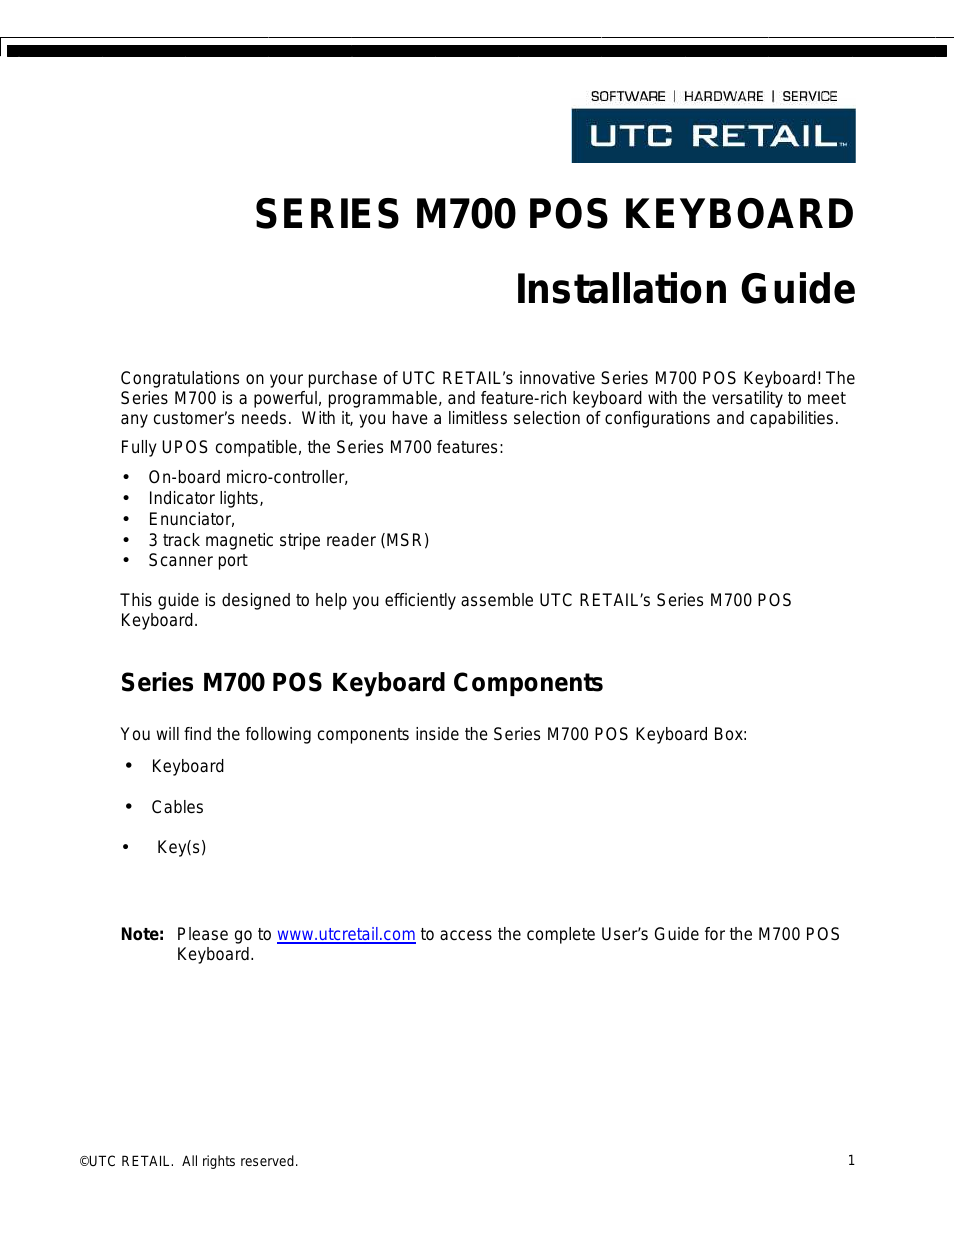 POS Keyboard M700